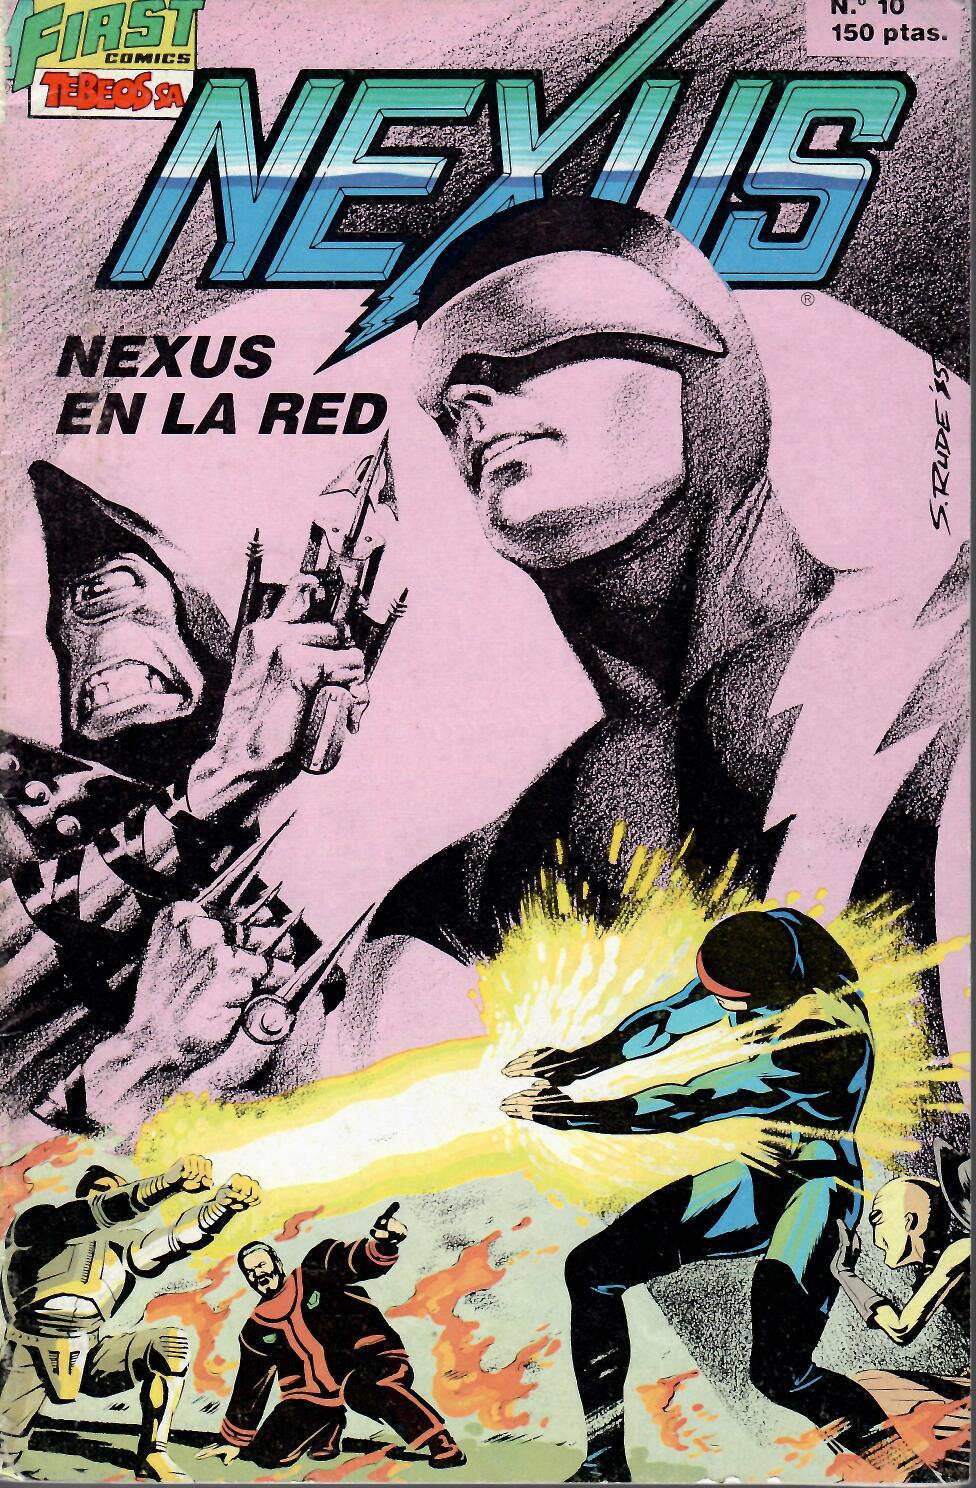 Nexus. Ediciones B 1988. Nº 10